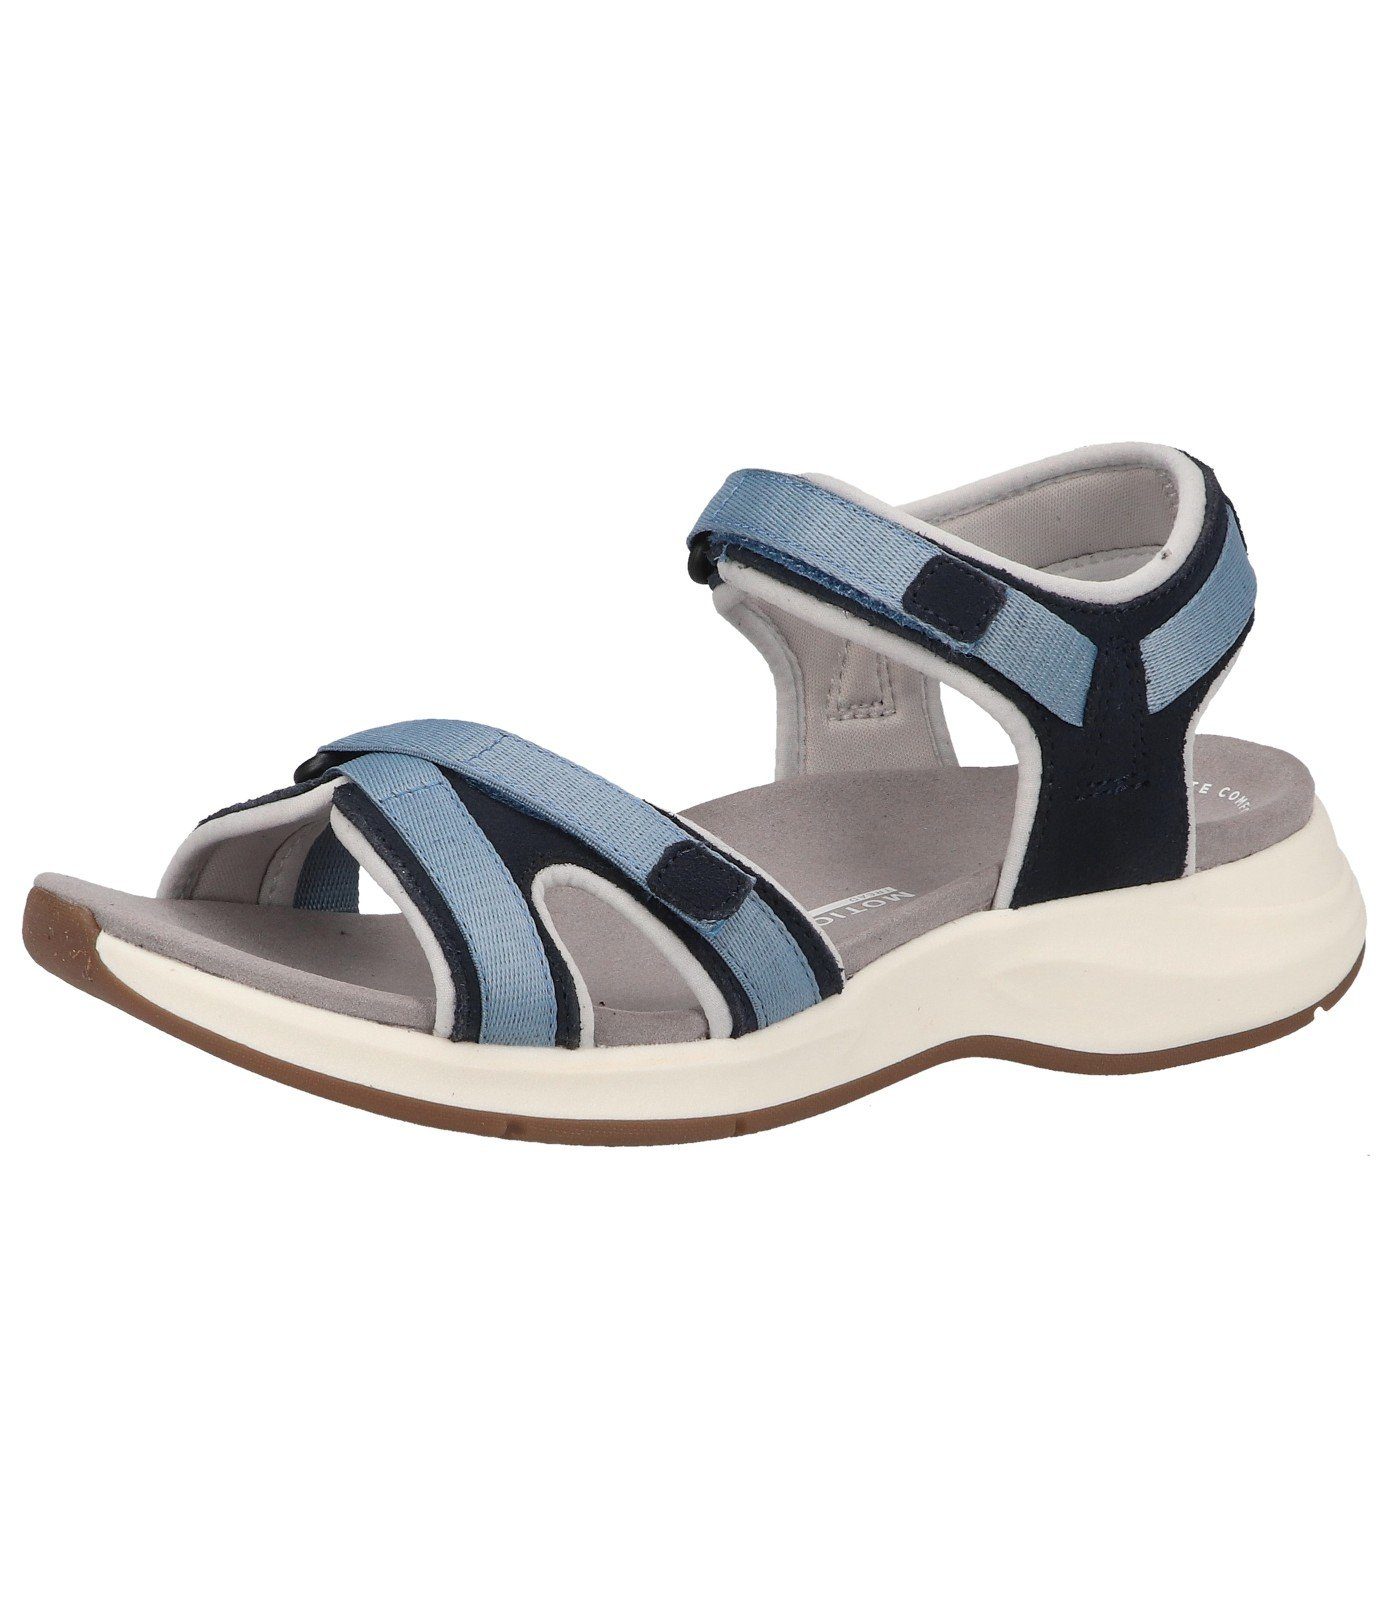 Clarks Sandalen online kaufen | OTTO